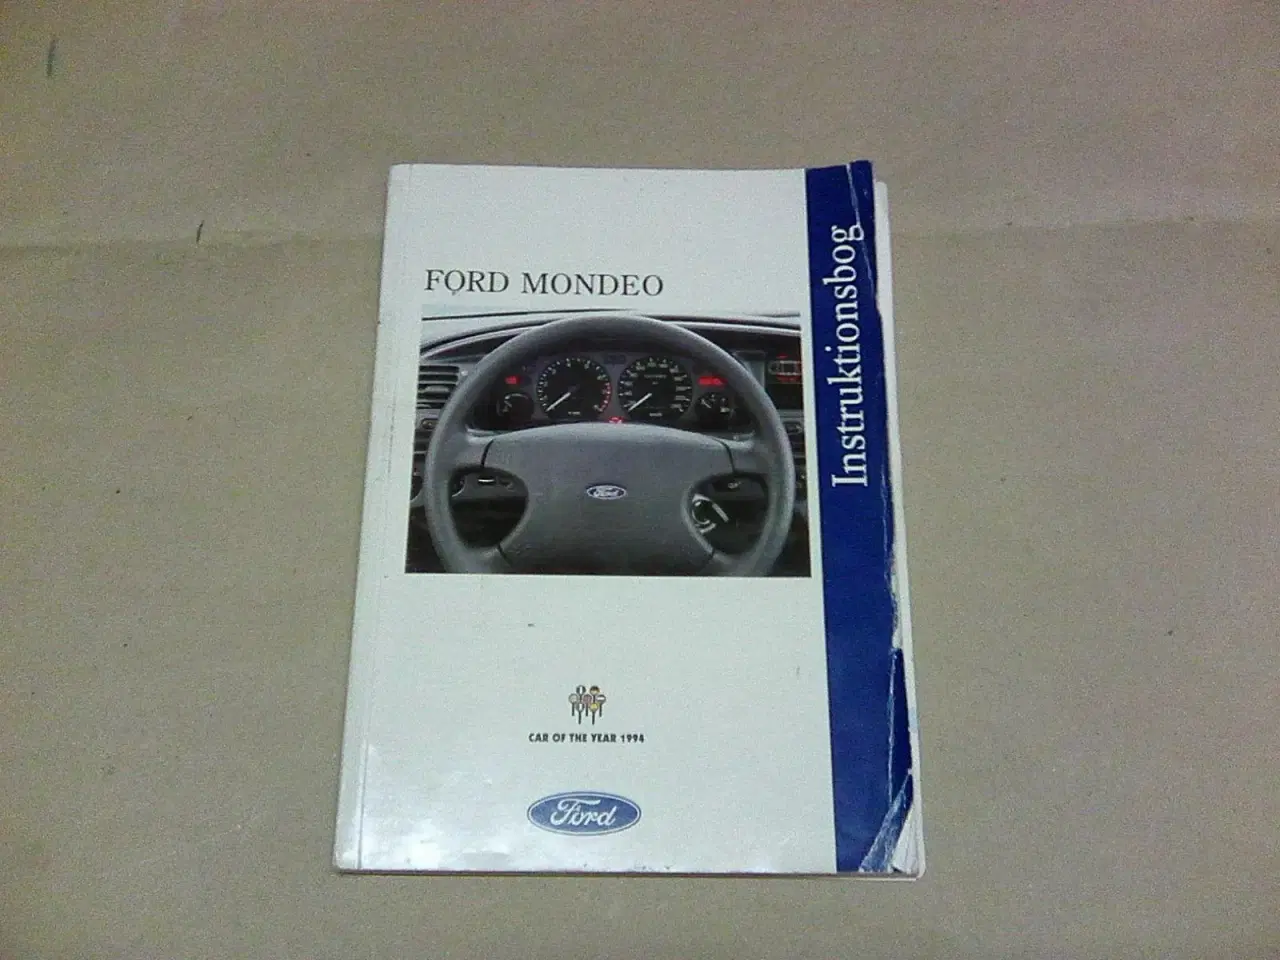 Billede 5 - Instruktion's bøger til Bil og andre køretøjer